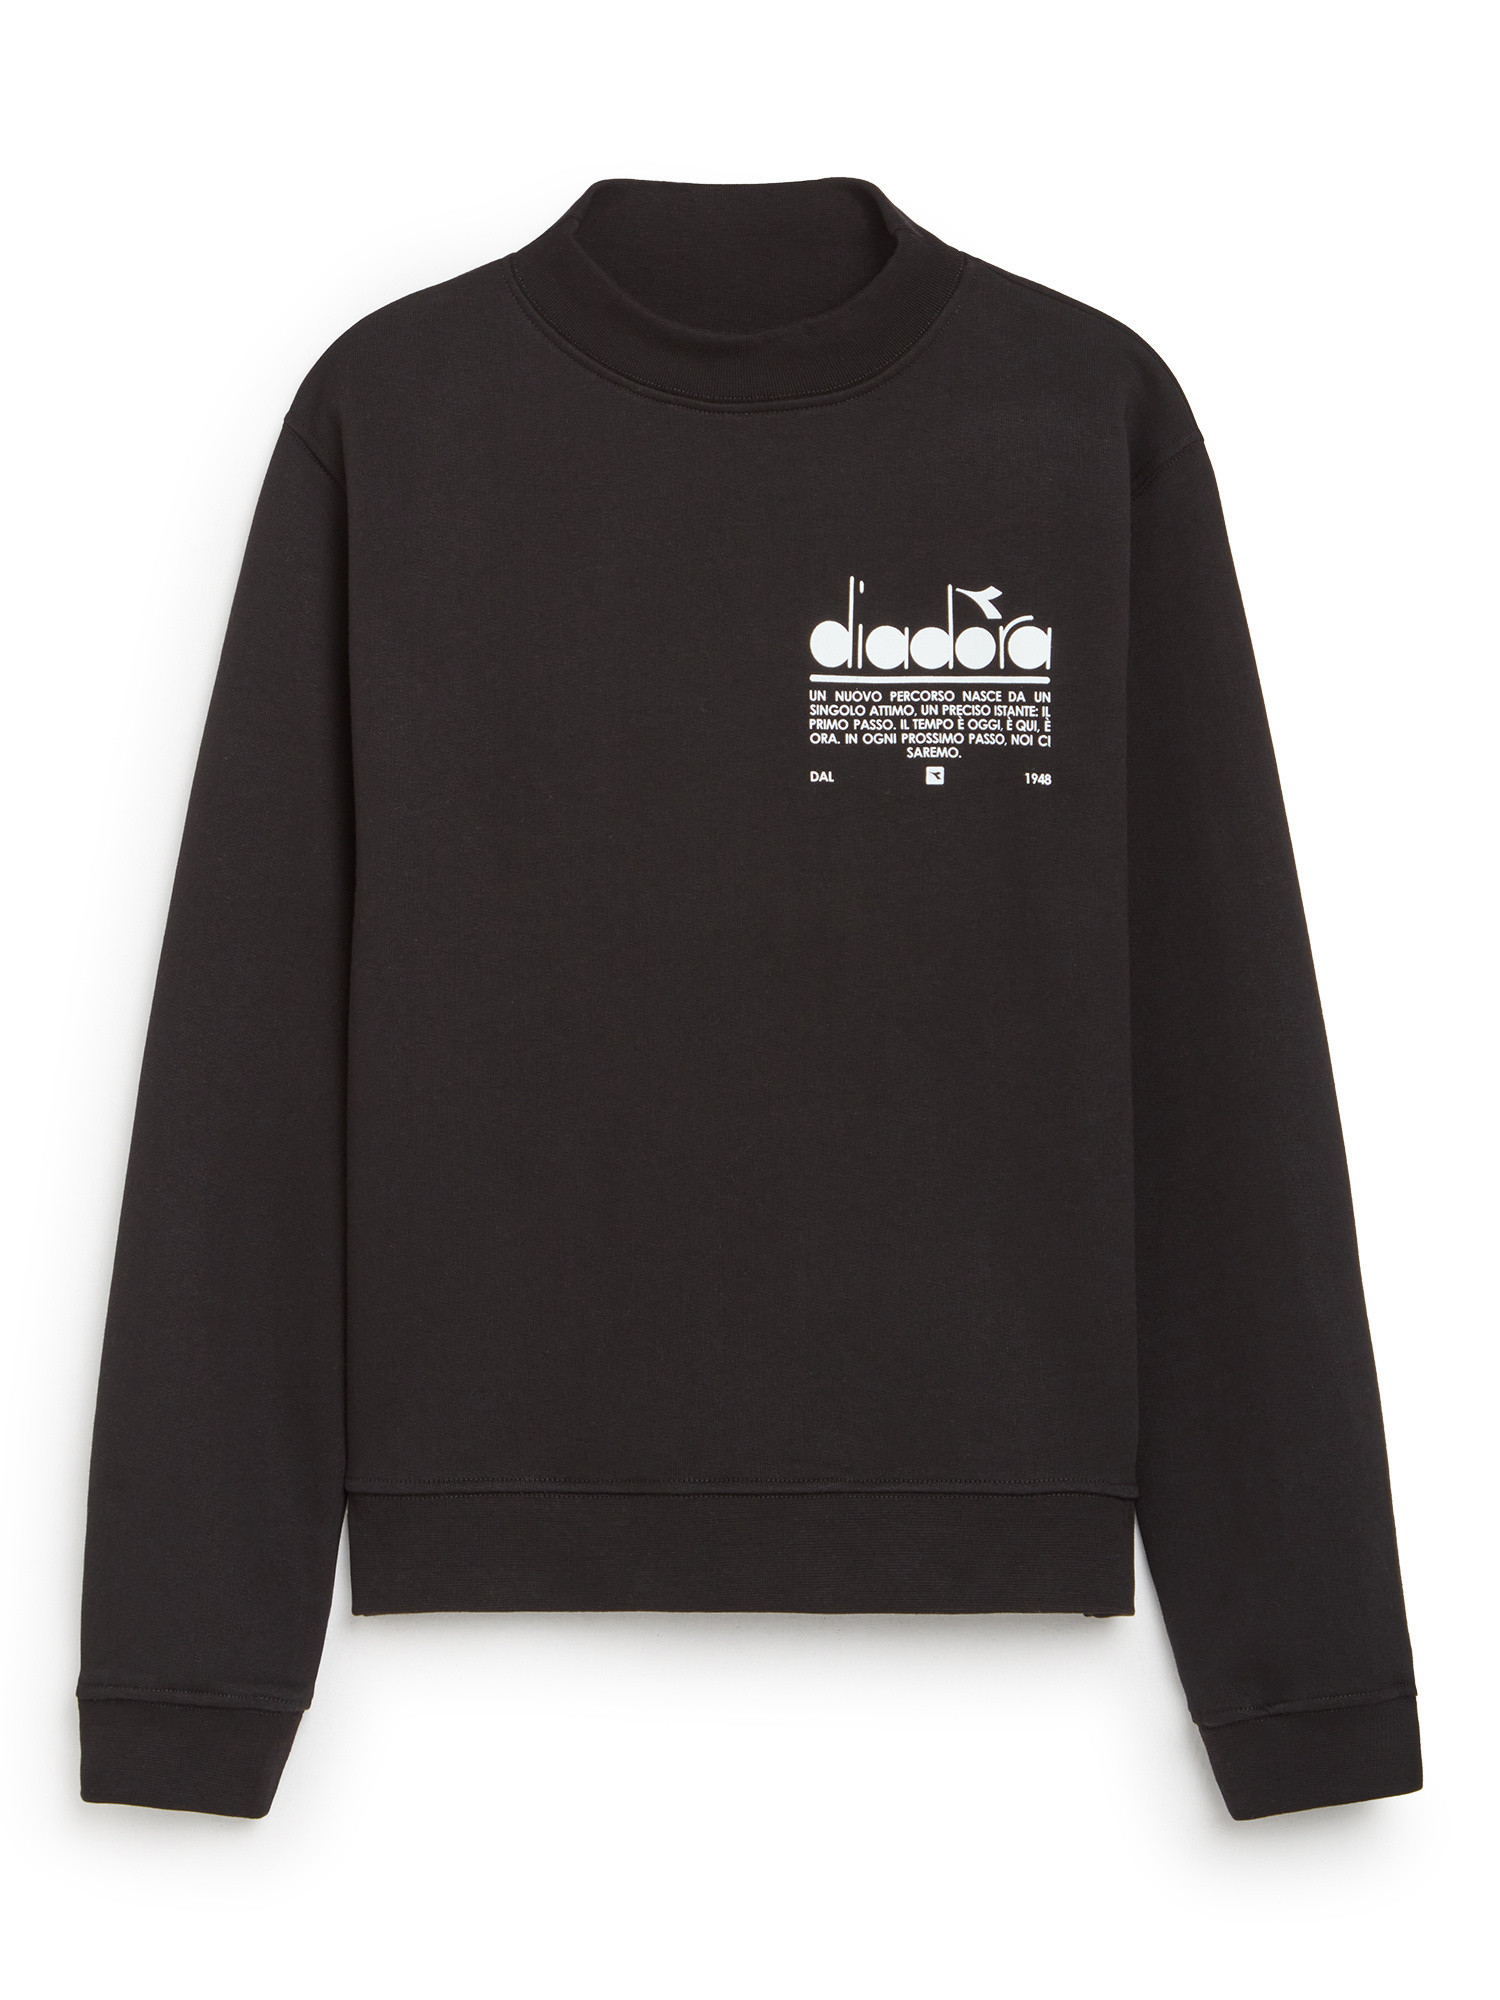 Diadora - Manifesto cotton sweatshirt, Black, large image number 0